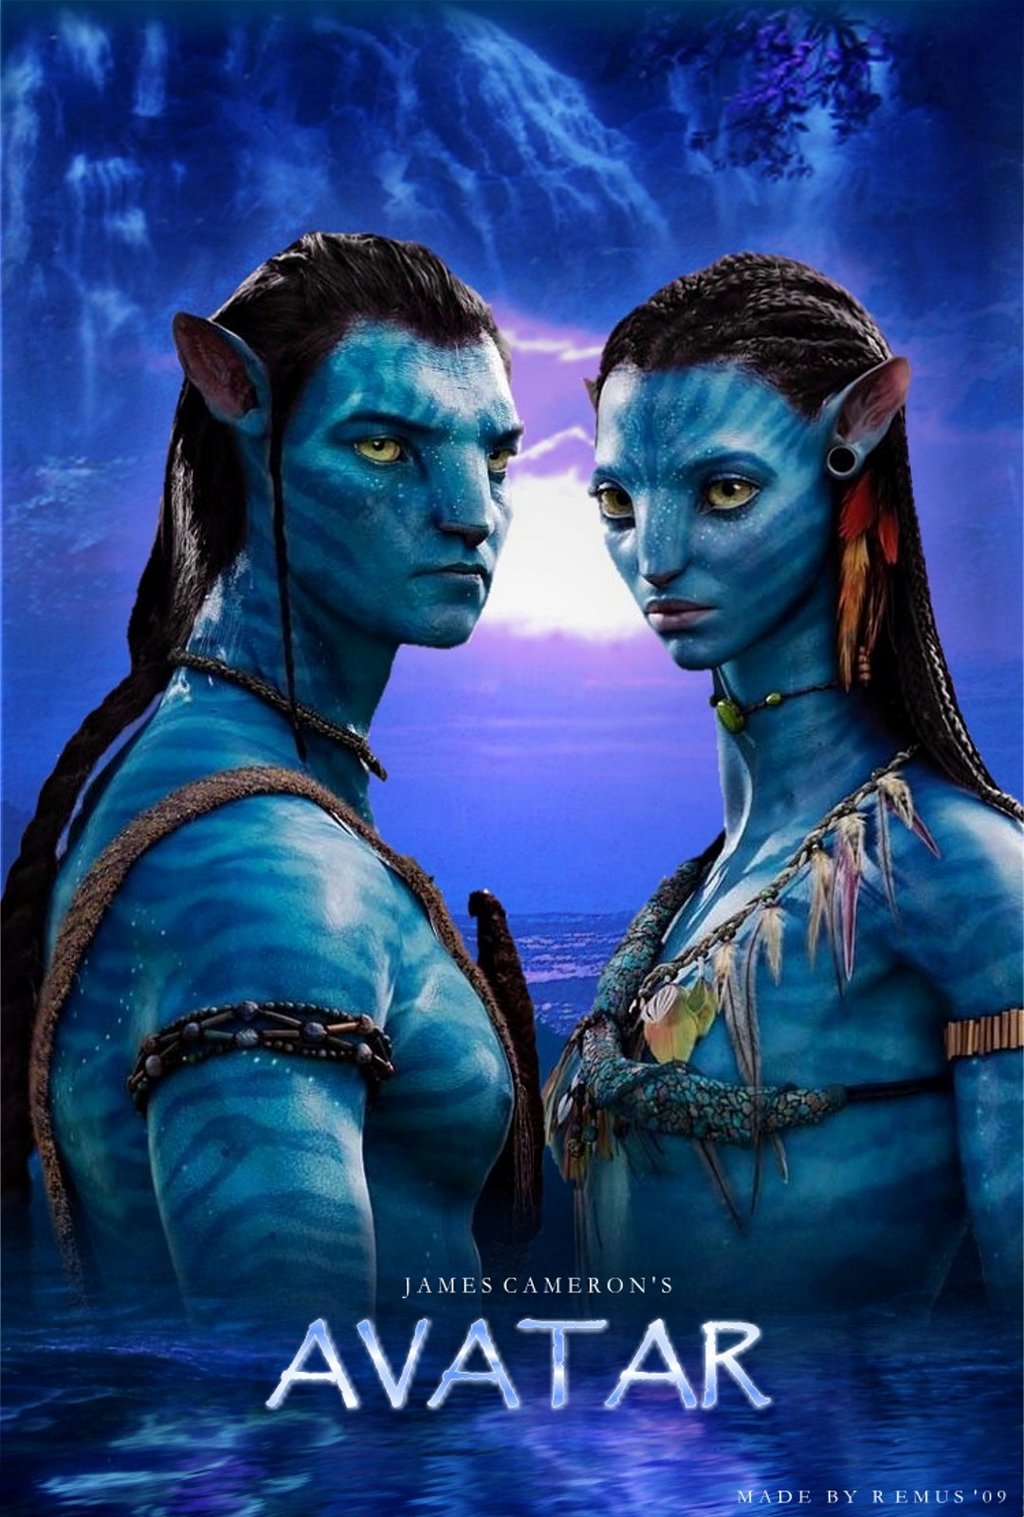 Xôn xao lỗi kỹ xảo đầu tiên của Avatar 2 sau 3 tháng ra rạp Một nhân vật  mất nửa người